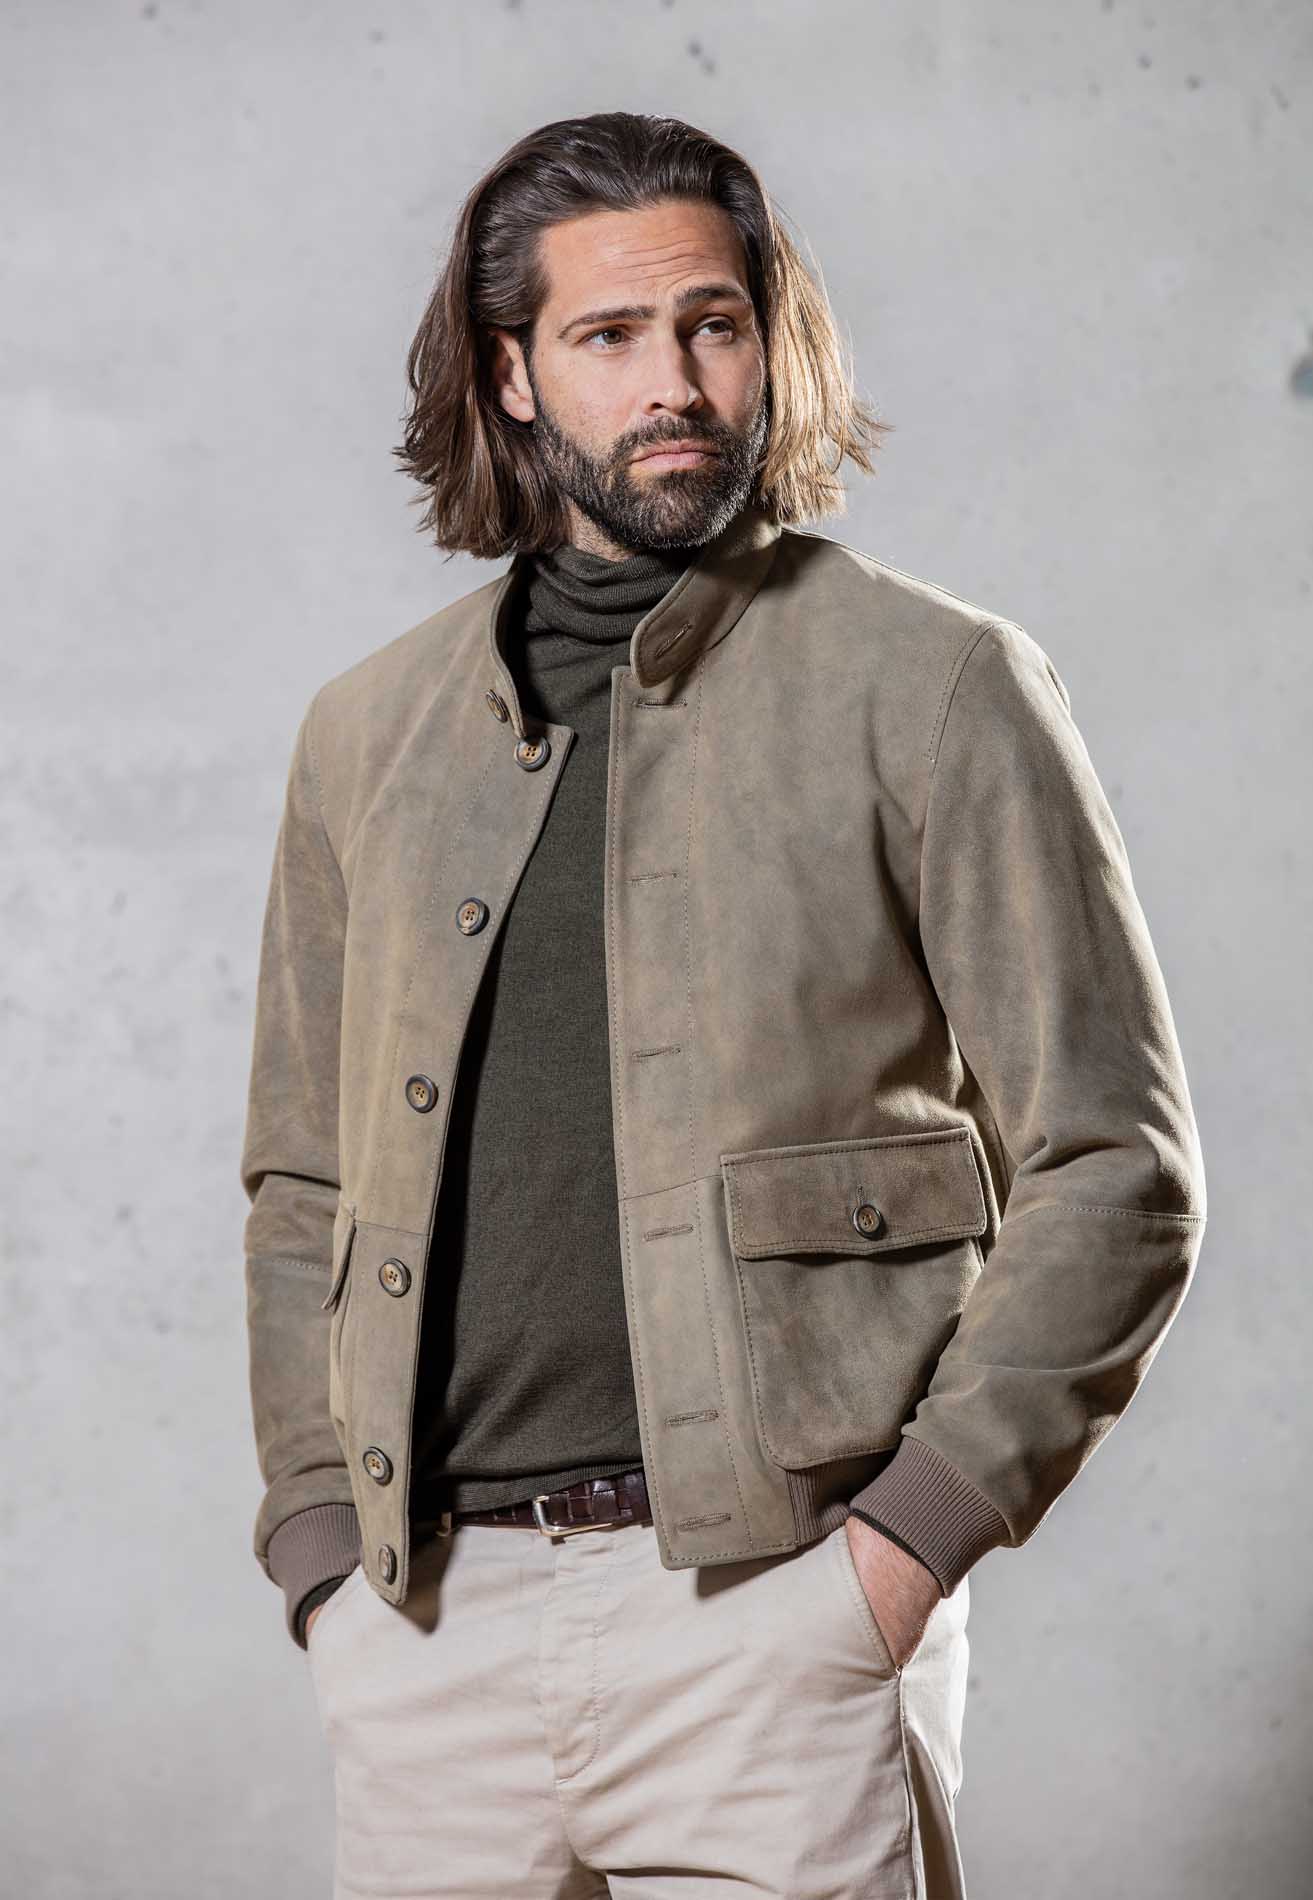 Goat Leather Jacket Men “Finn”, inka